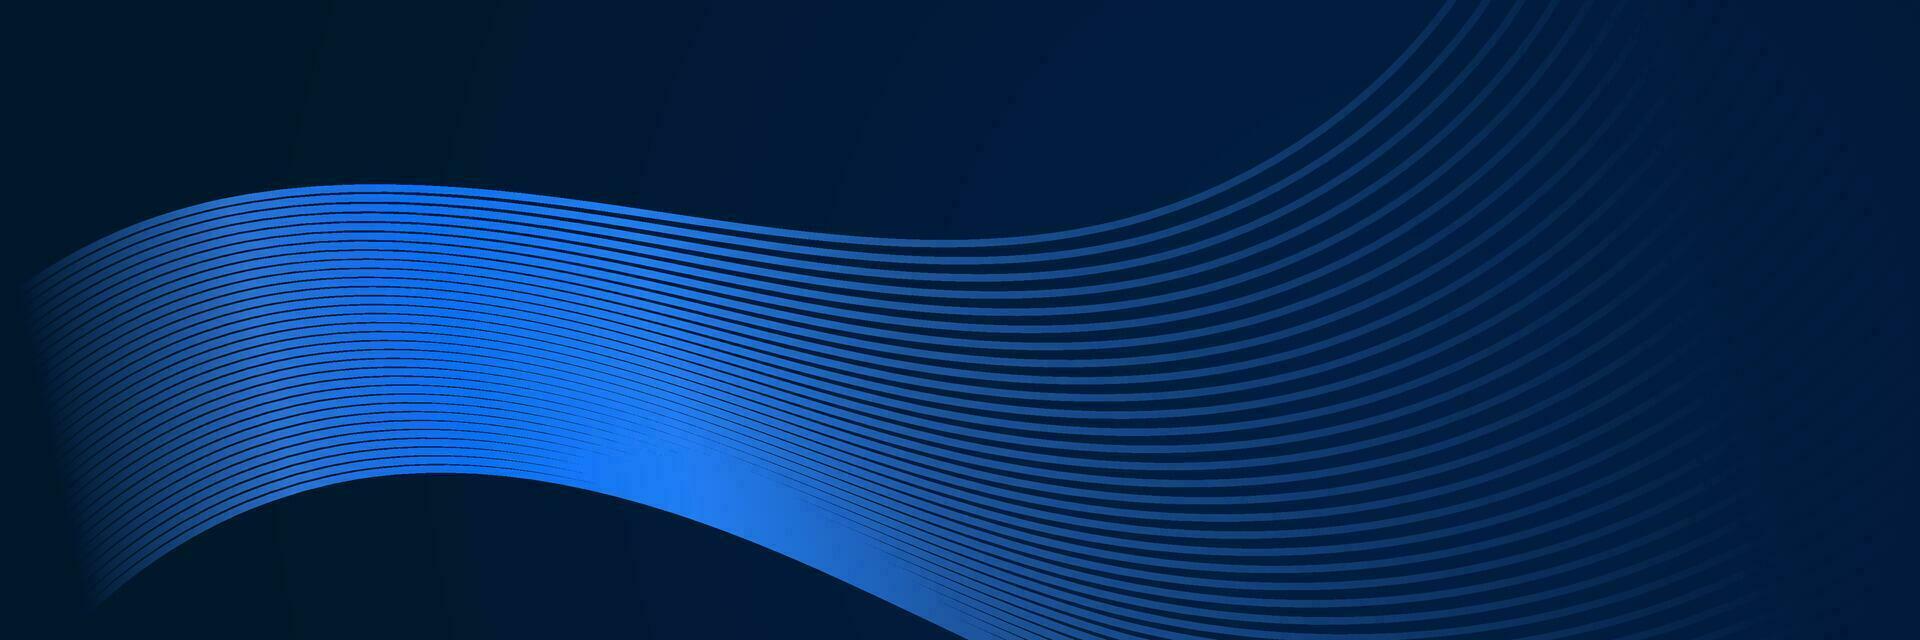 abstract bedrijf donker blauw achtergrond met gloeiend lijnen vector